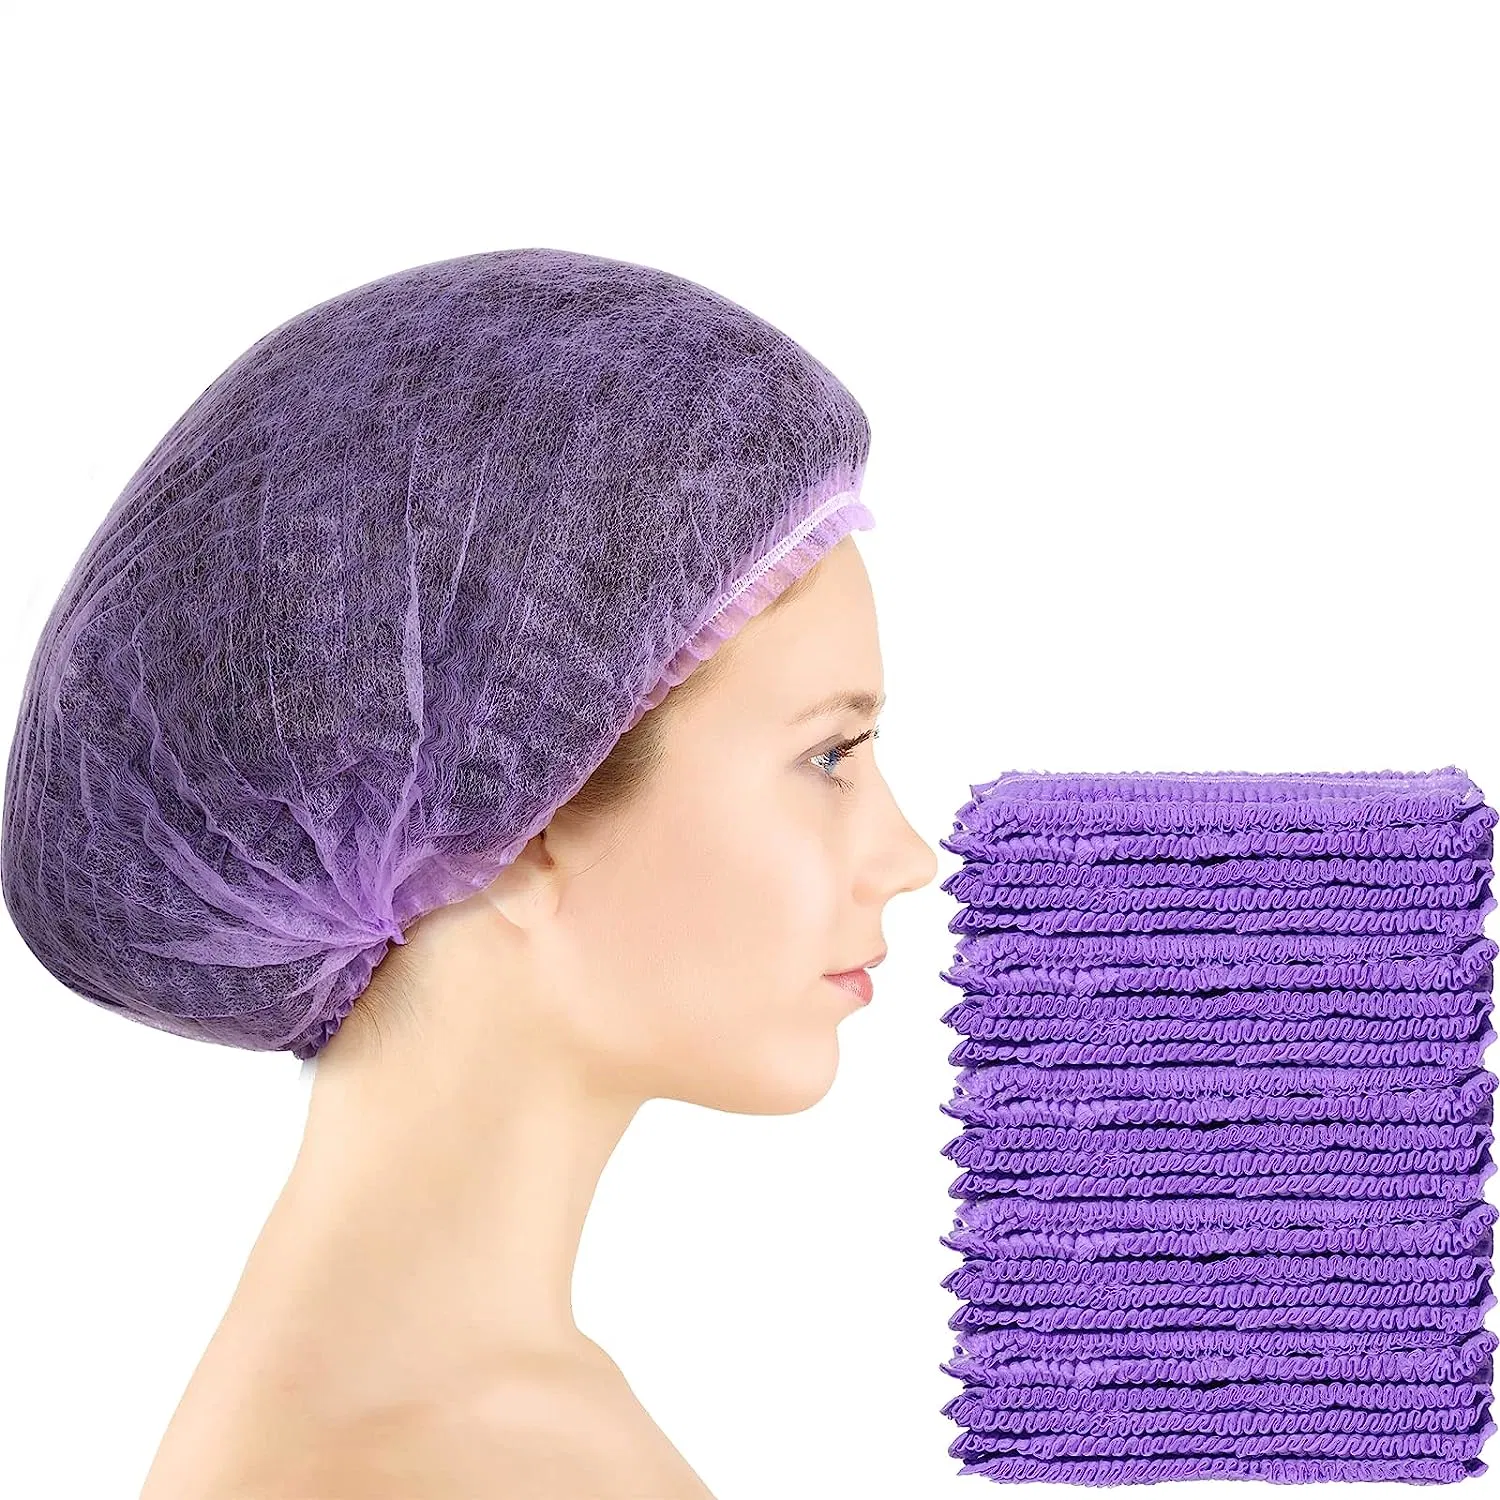 Einweg-Bouffant Caps Einweg-Caps für Haar elastische Staubkappe Haarnetze für Food Service, Krankenschwestern, Labs